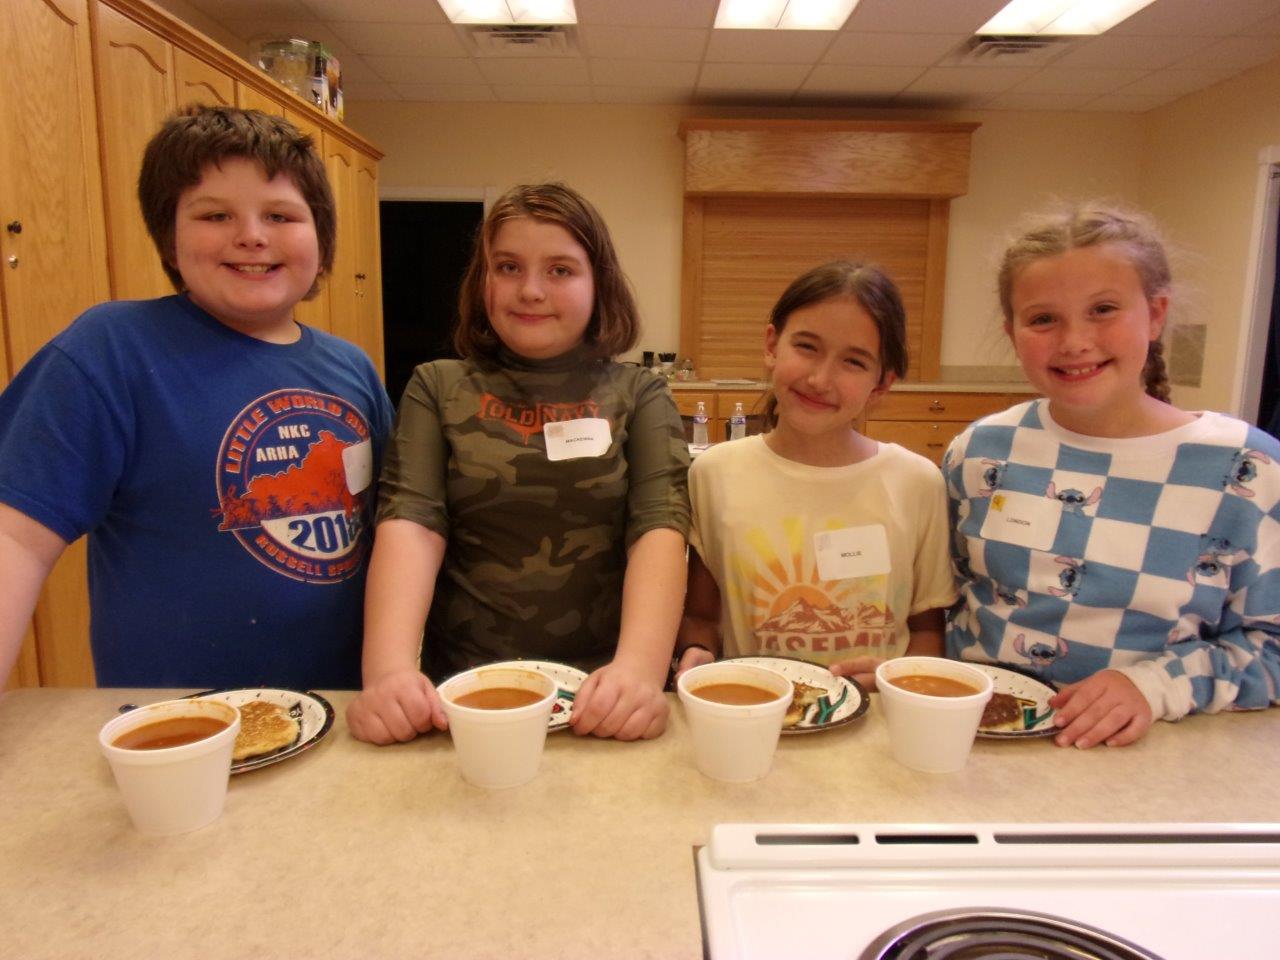 Children with chili and cornbread